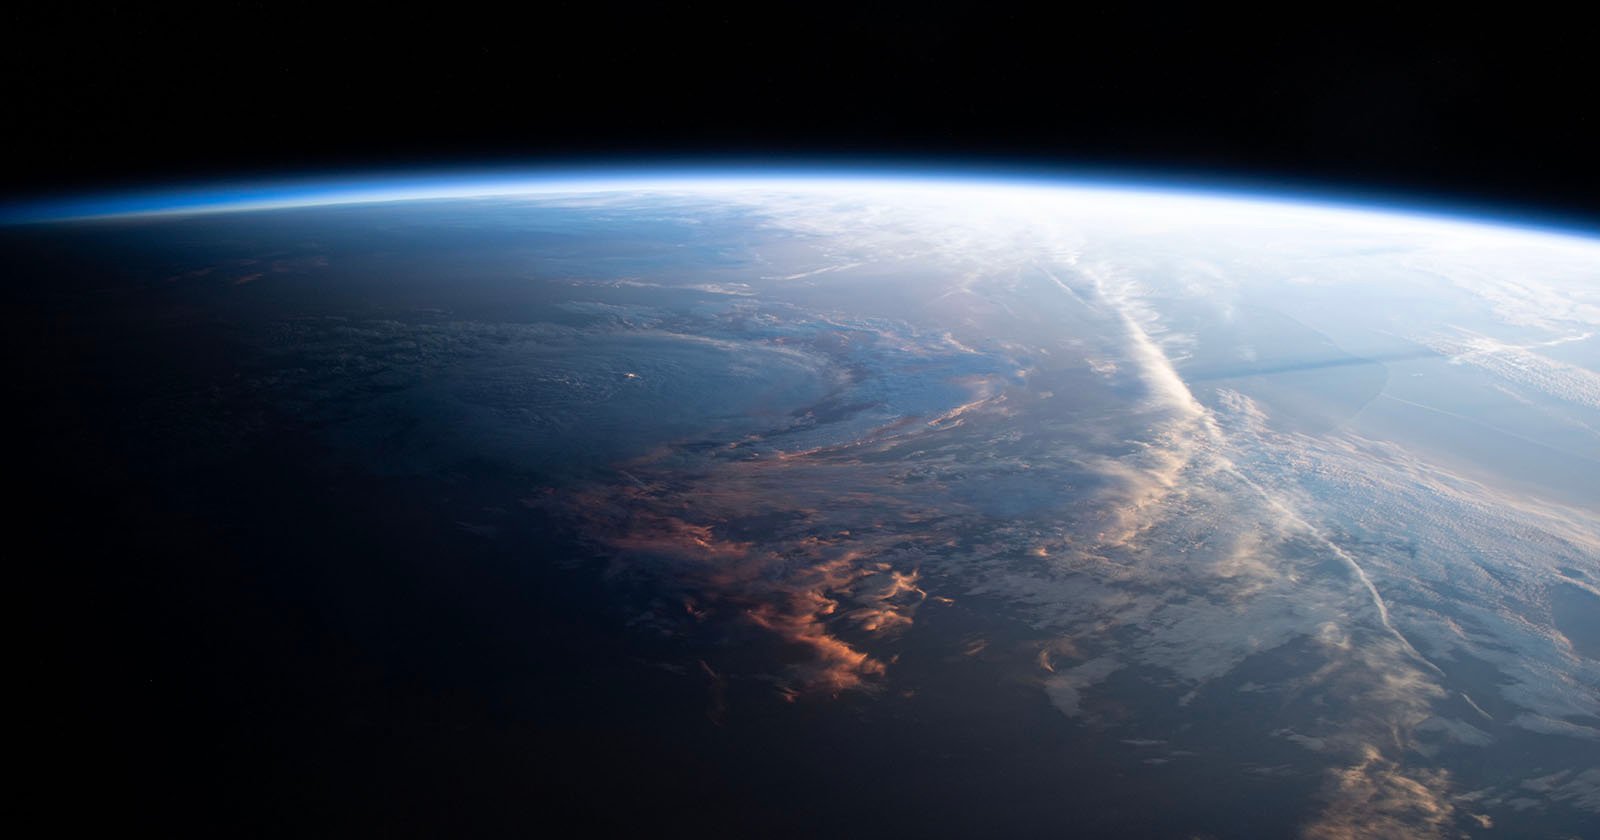 يشارك رائد فضاء متجه إلى الأرض صورًا مذهلة تم التقاطها أثناء وجوده في المدار